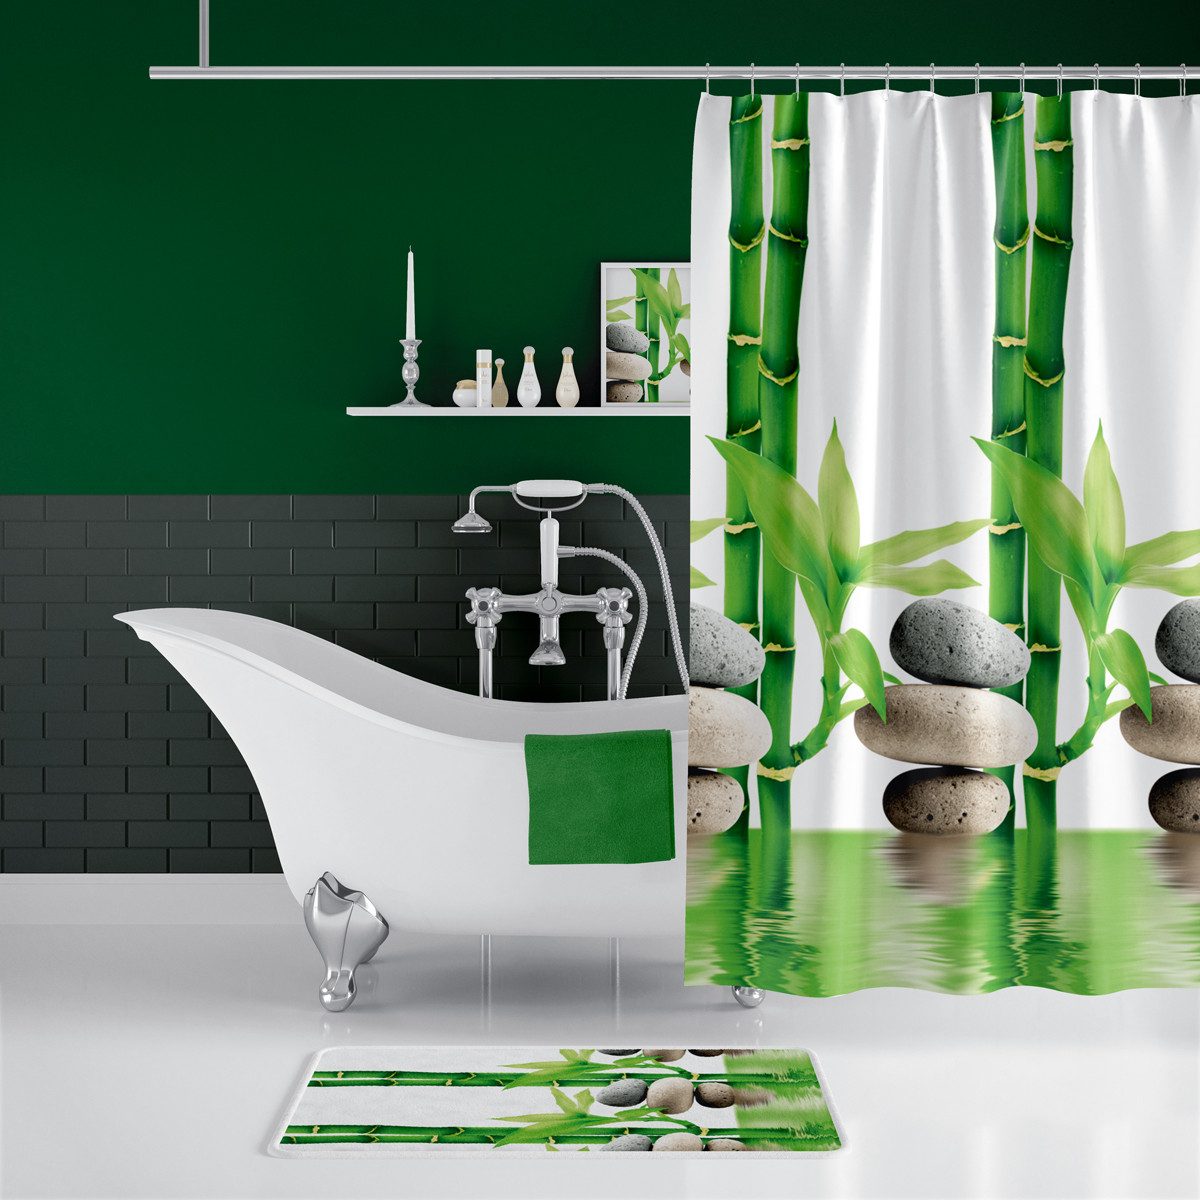 Ekershop Duschvorhang Textil "Bambus mit Stein" Grün Weiß für Duschstange Breite 120 cm, Höhe 200 cm, wasserabweisend, inkl. Ringe, waschbar, bügelbar